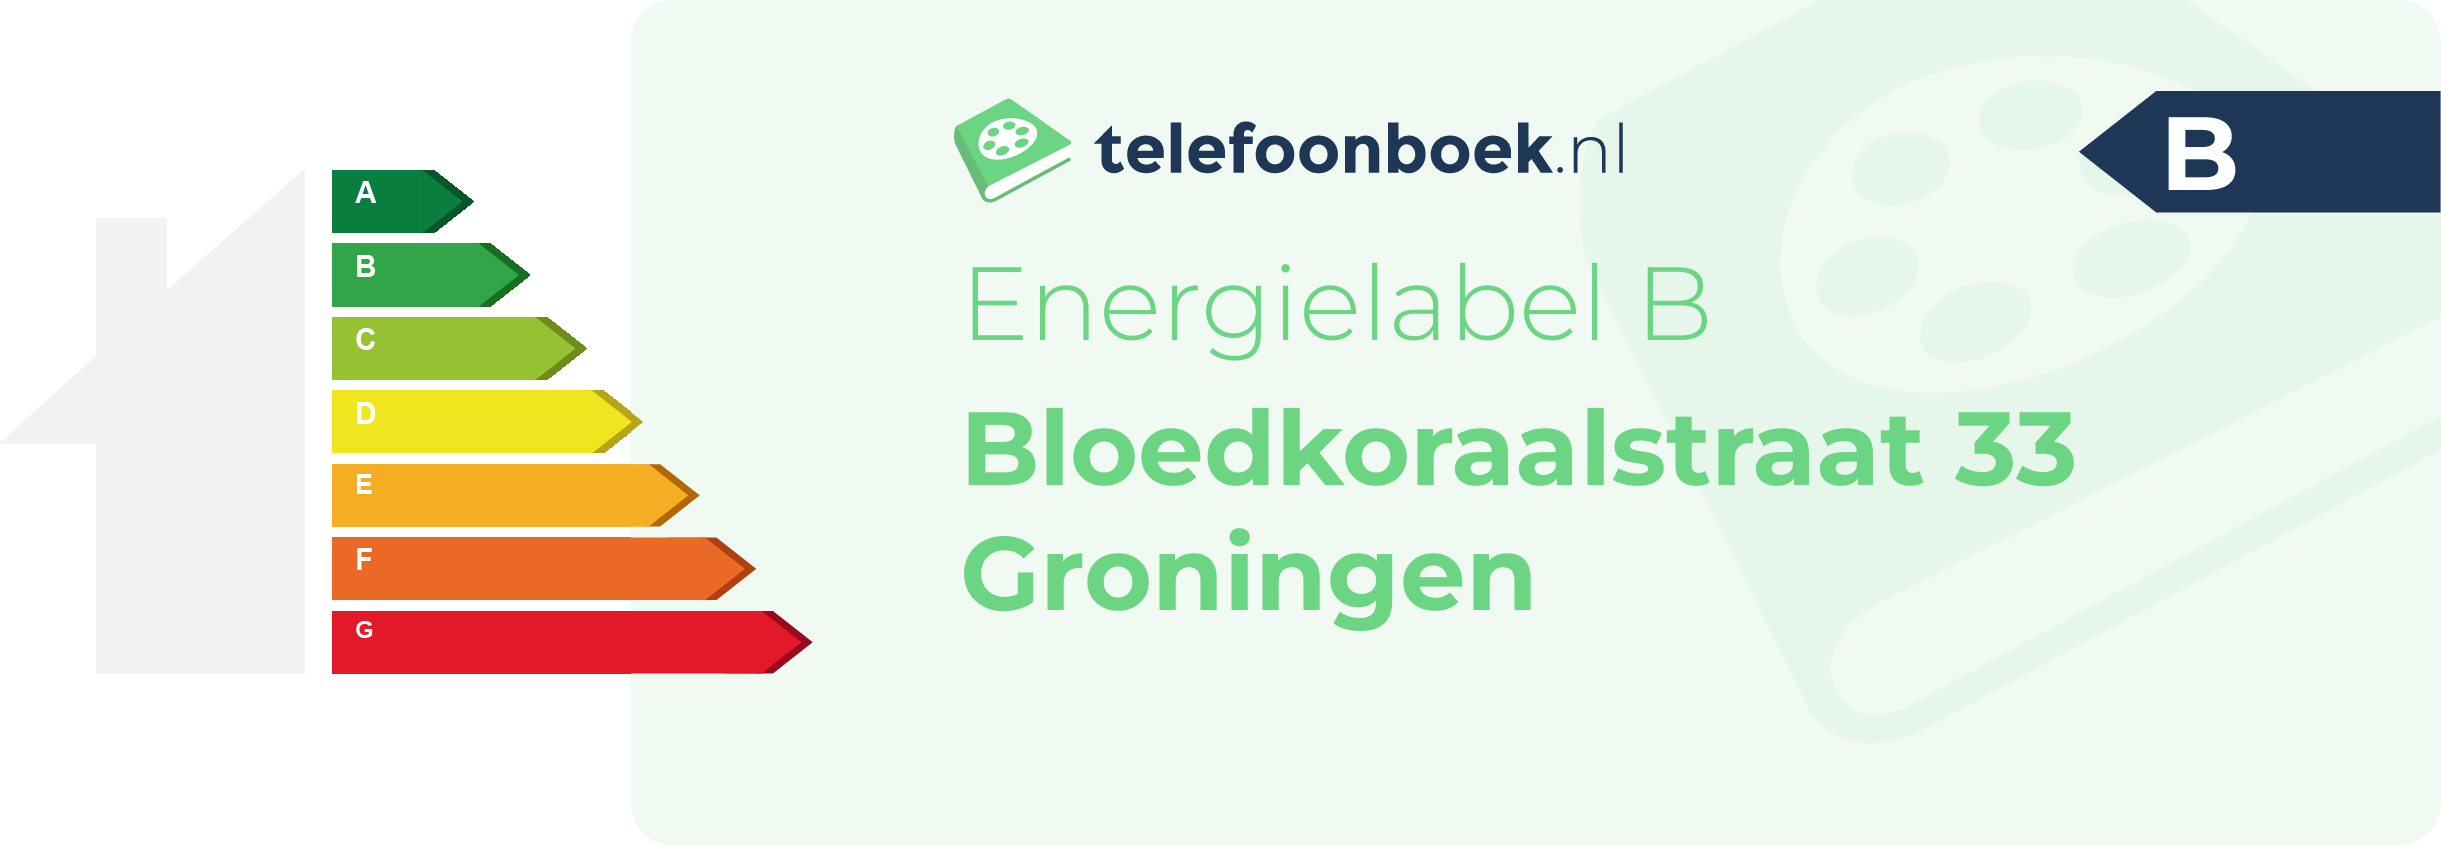 Energielabel Bloedkoraalstraat 33 Groningen